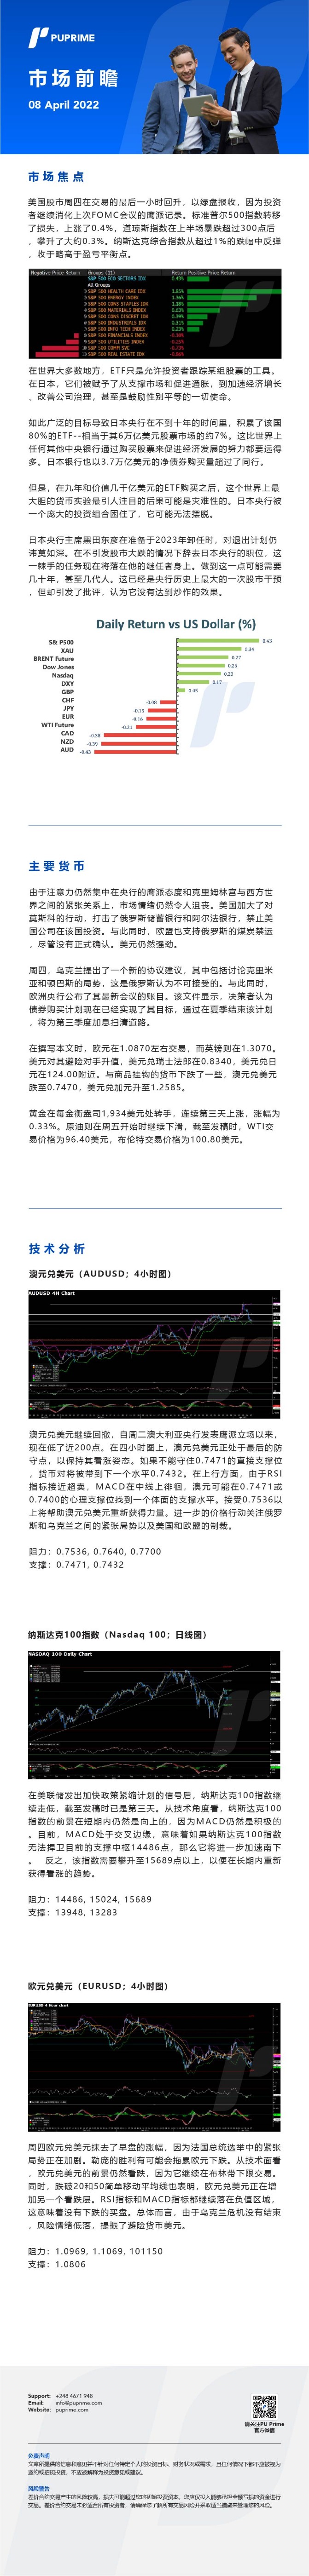 08042022 Daily Market Analysis__CHN.jpg